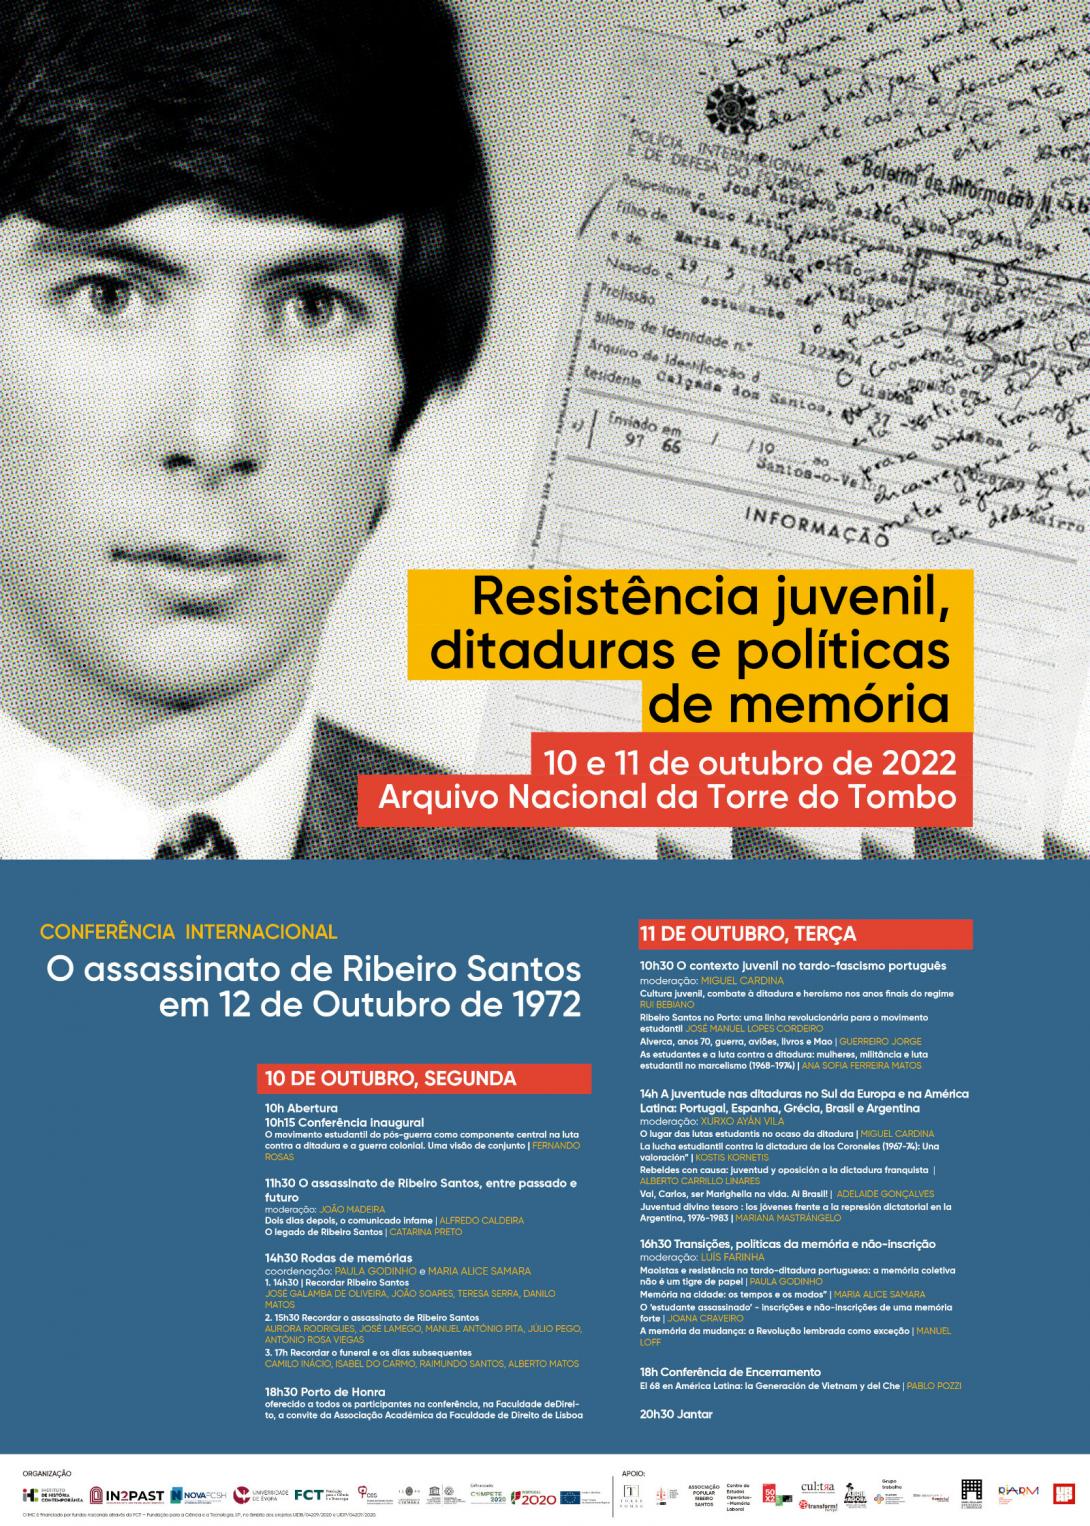 Cartaz da Conferência Inrternacional "Resistência Juvenil, ditaduras e políticas de memória - O assassinato de Ribeiro Santos em 12 de Outubro de 1972"